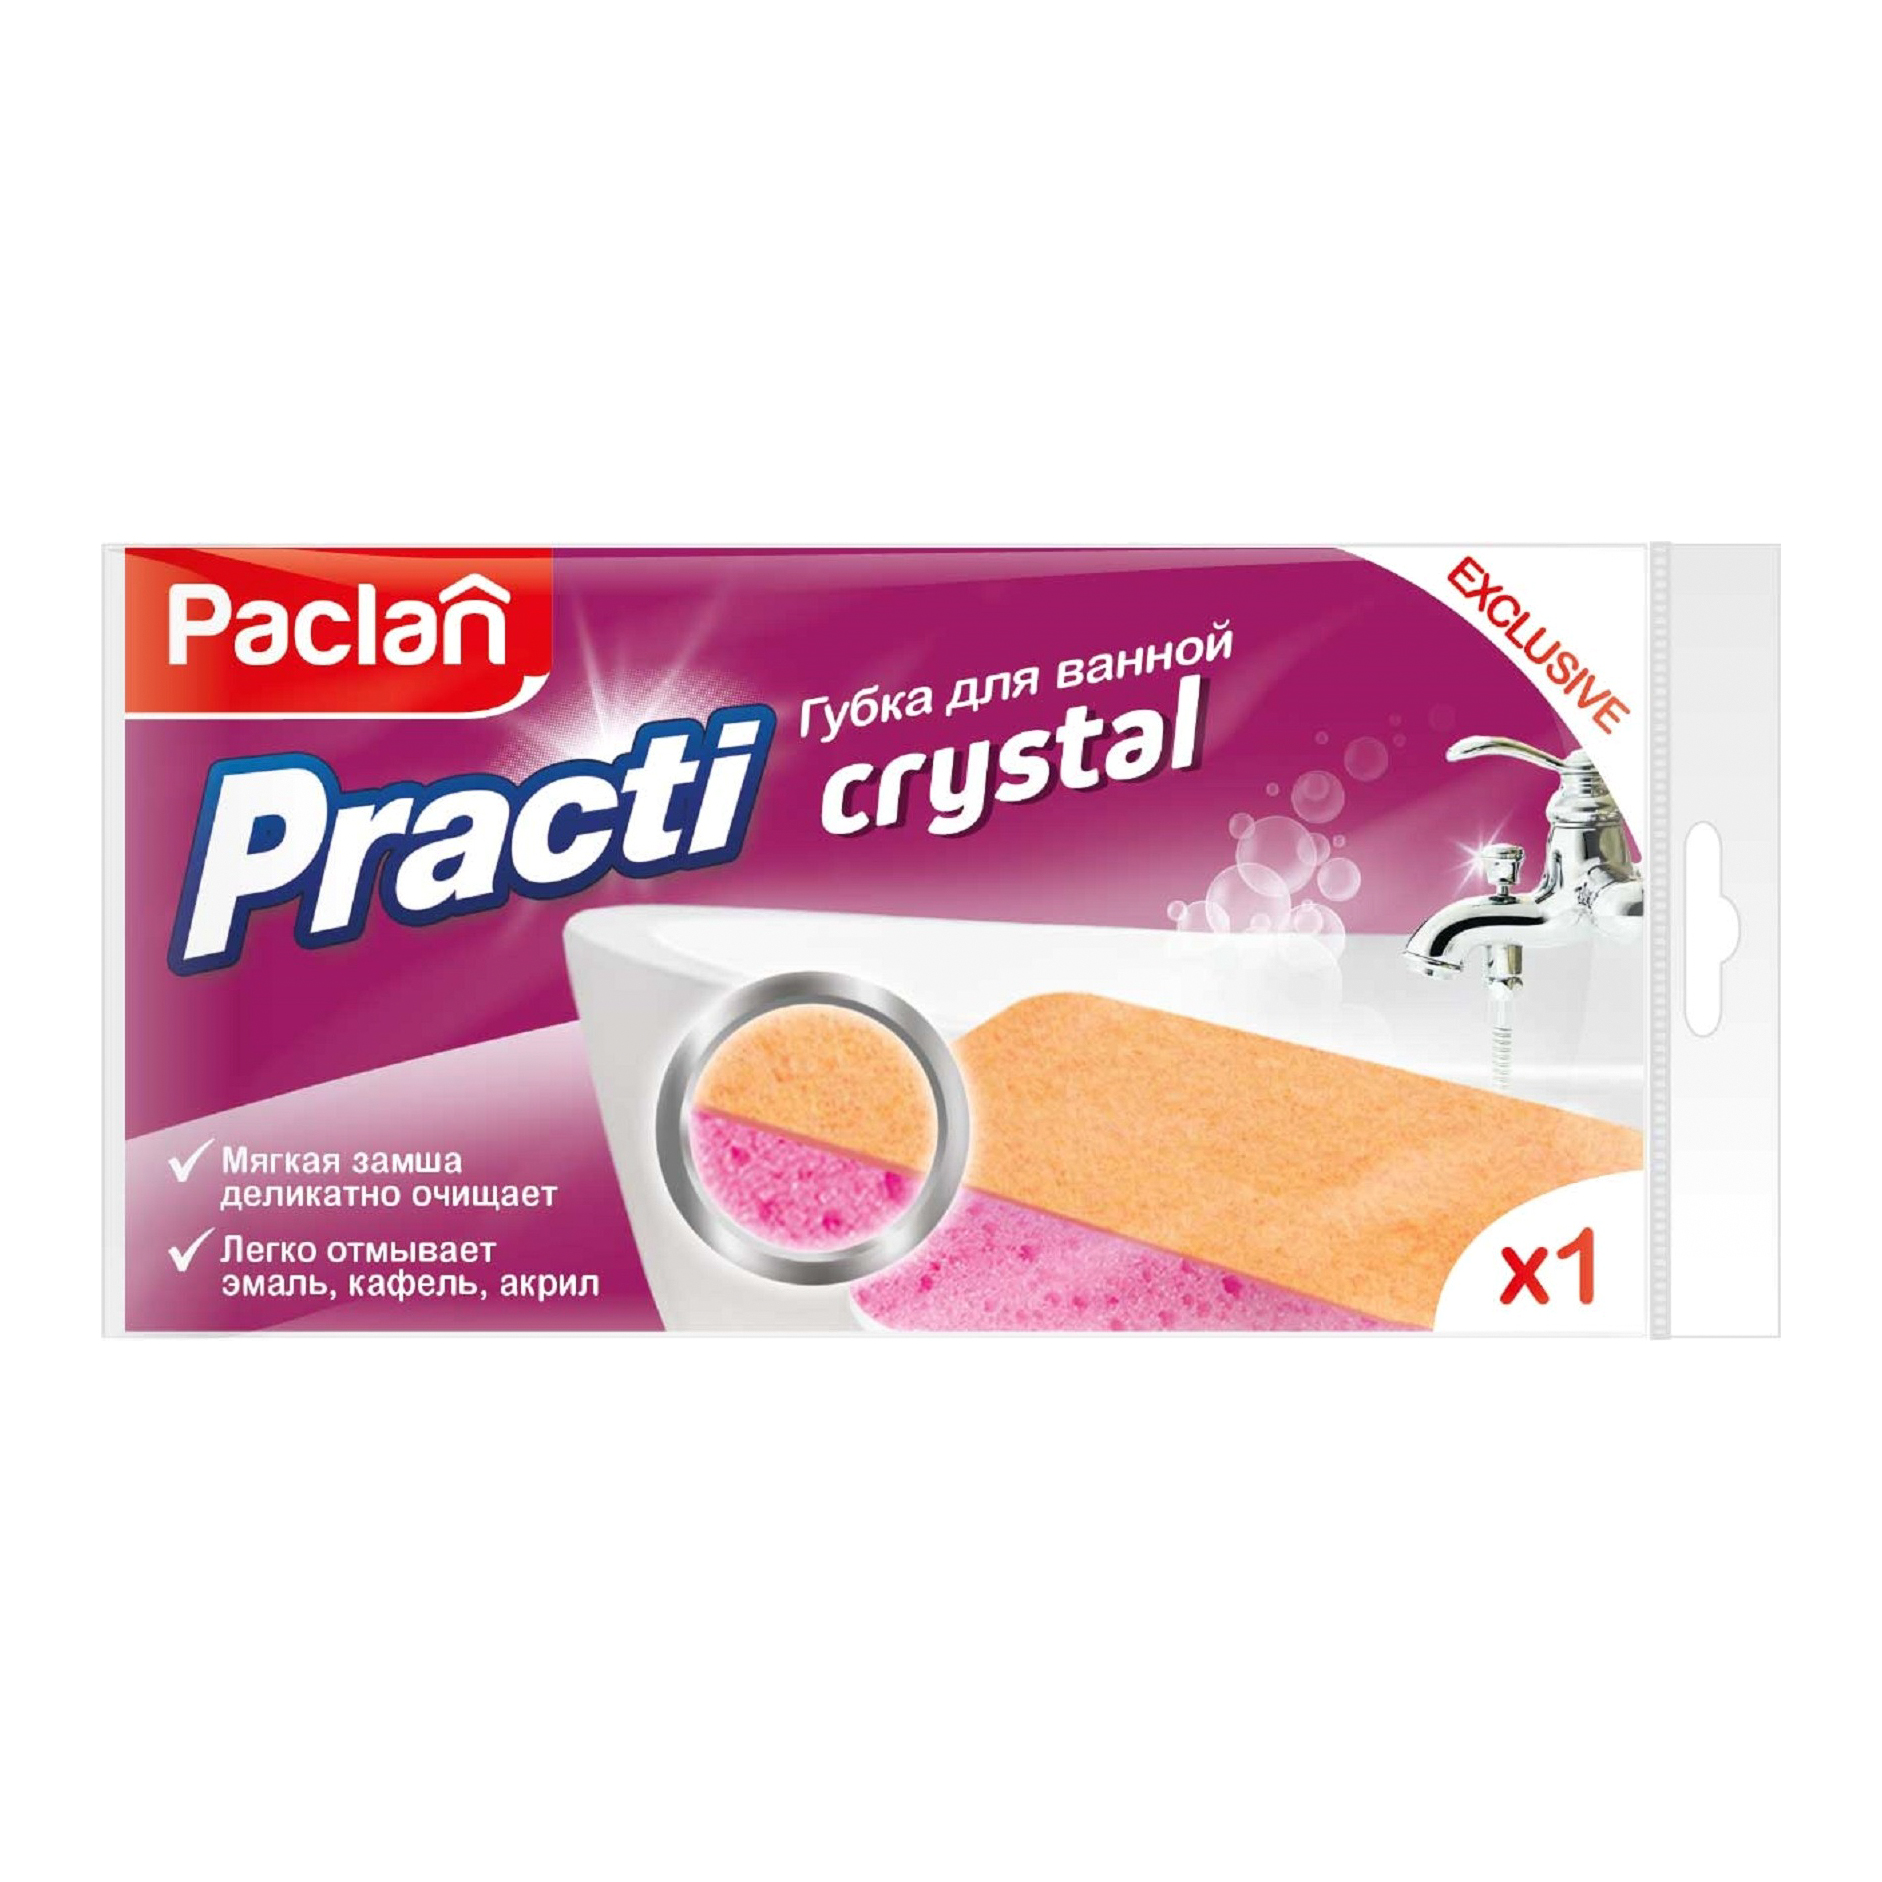 губка spontex для ванной xl bathroom Губка для ванной Paclan Practi Crystal